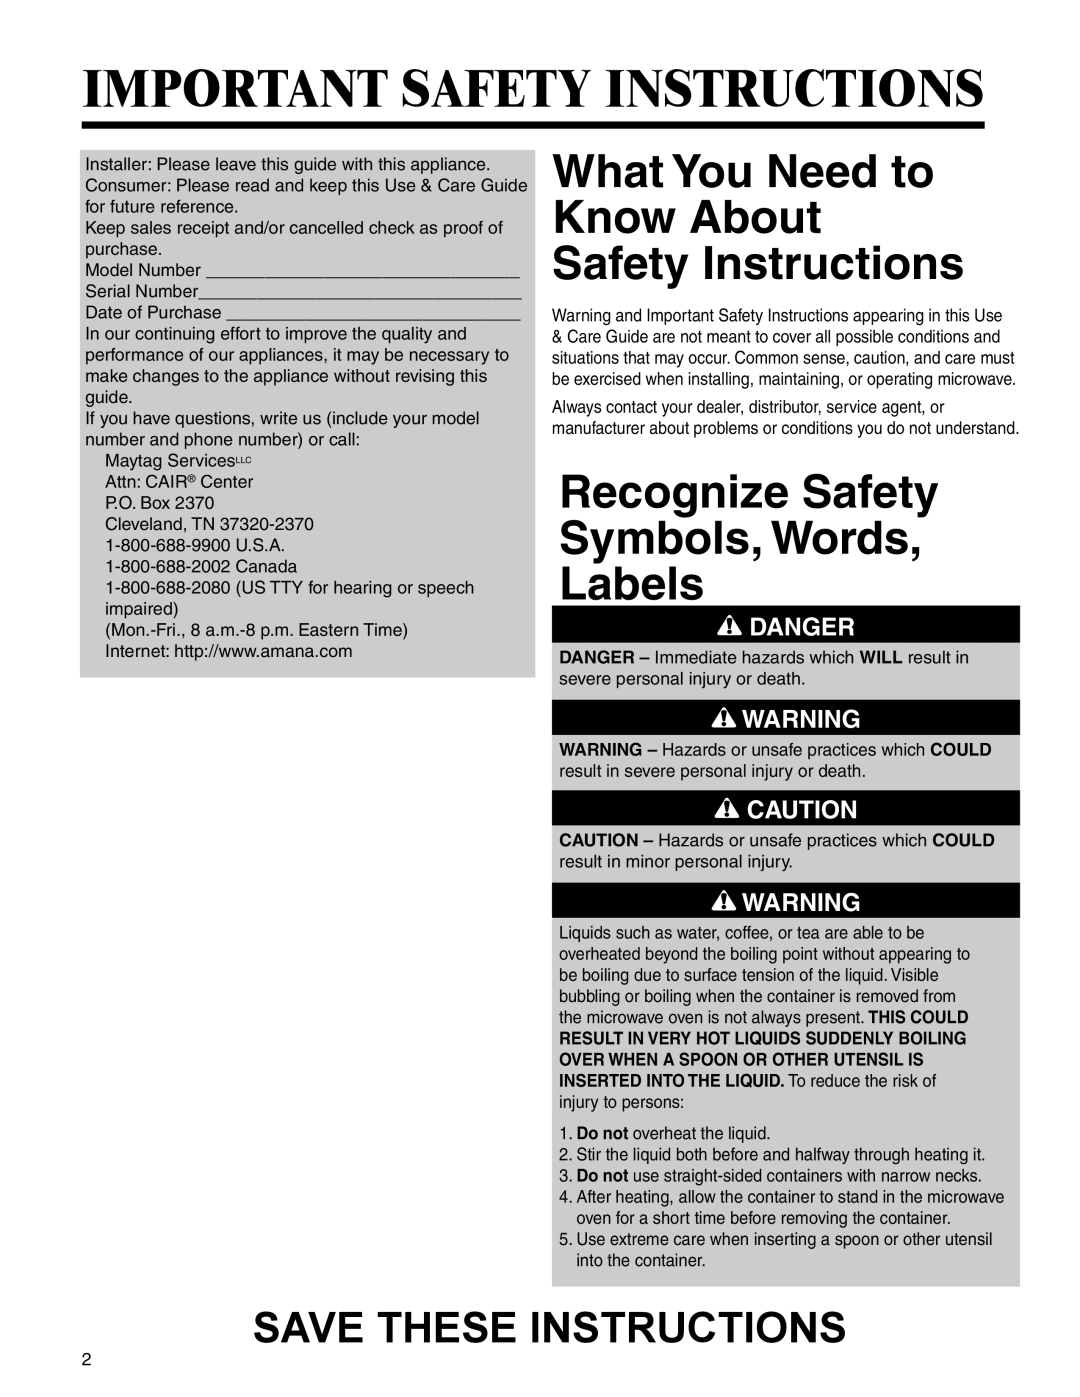 Amana AMC2206BA Important Safety Instructions, What You Need to Know About Safety Instructions, Save These Instructions 